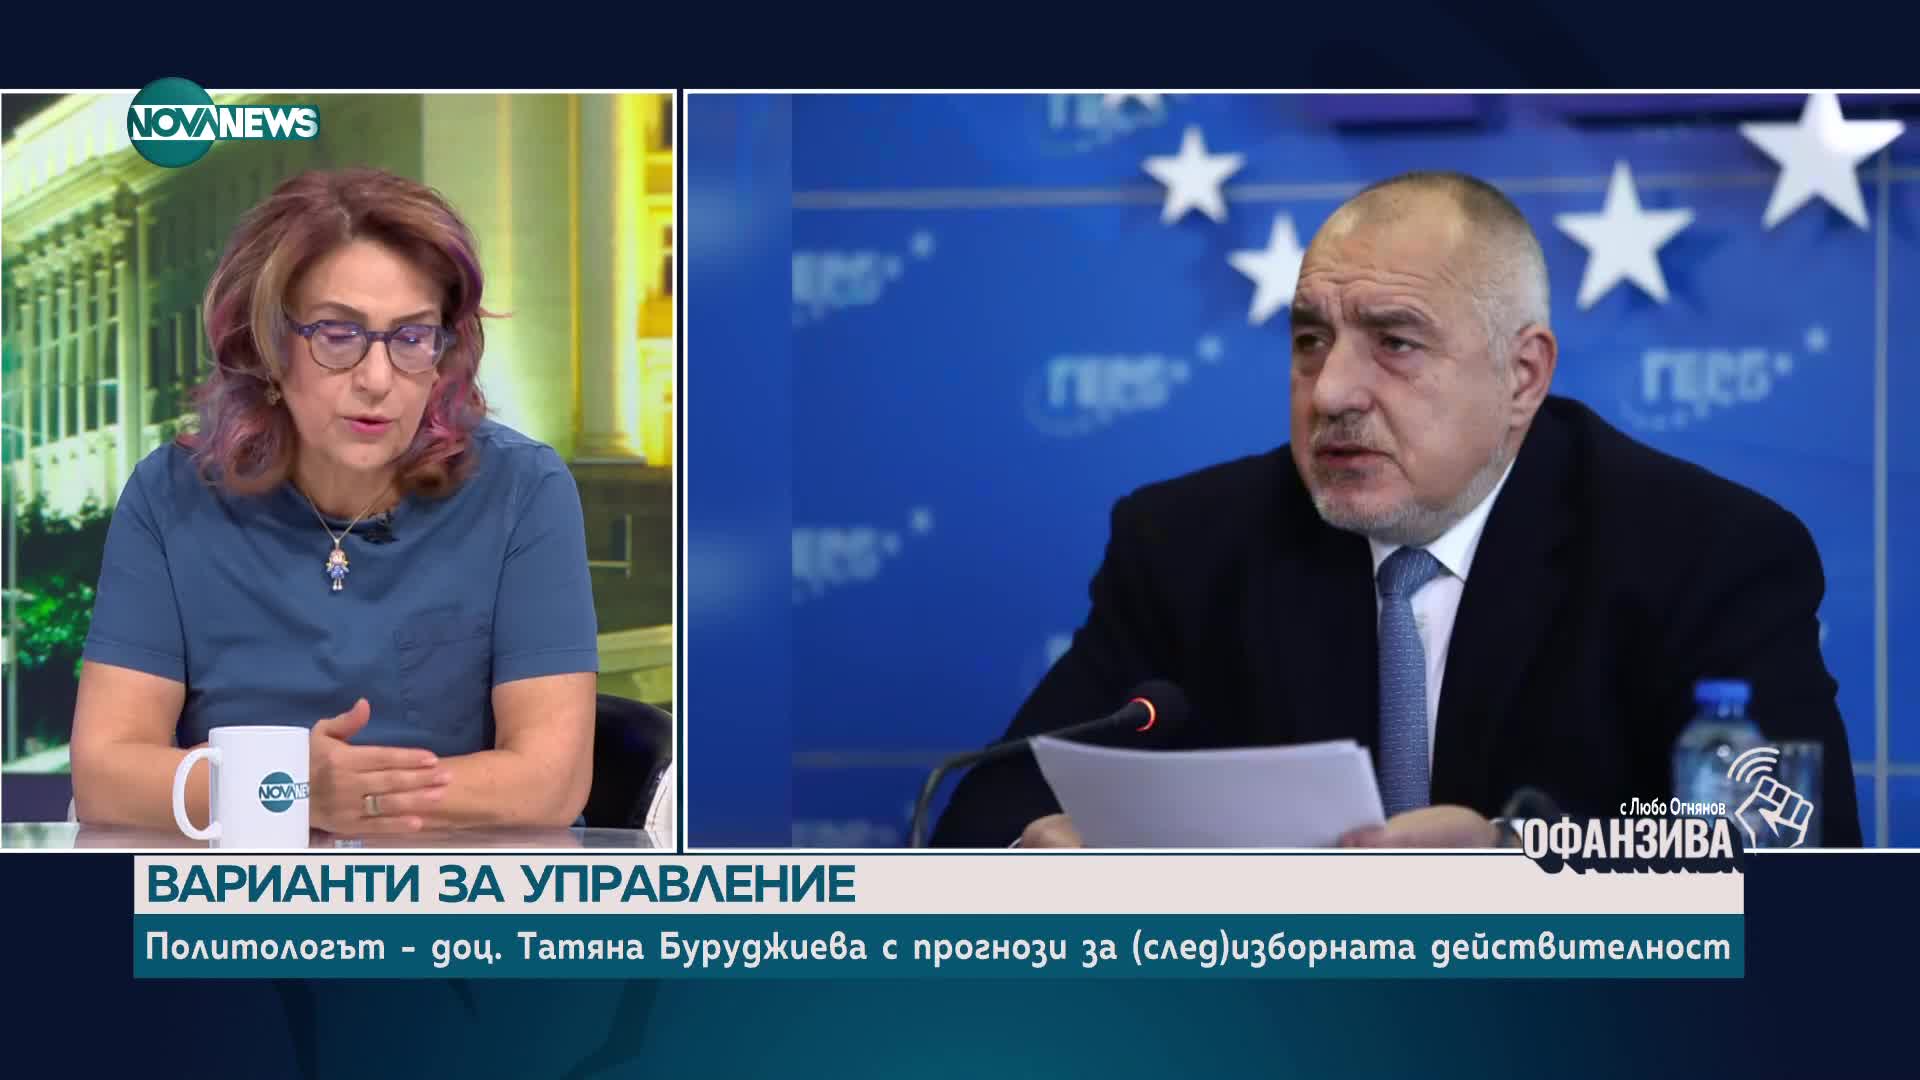 Варианти за управление: Политологът Татяна Буруджиева с прогнози за (след)изборната действителност